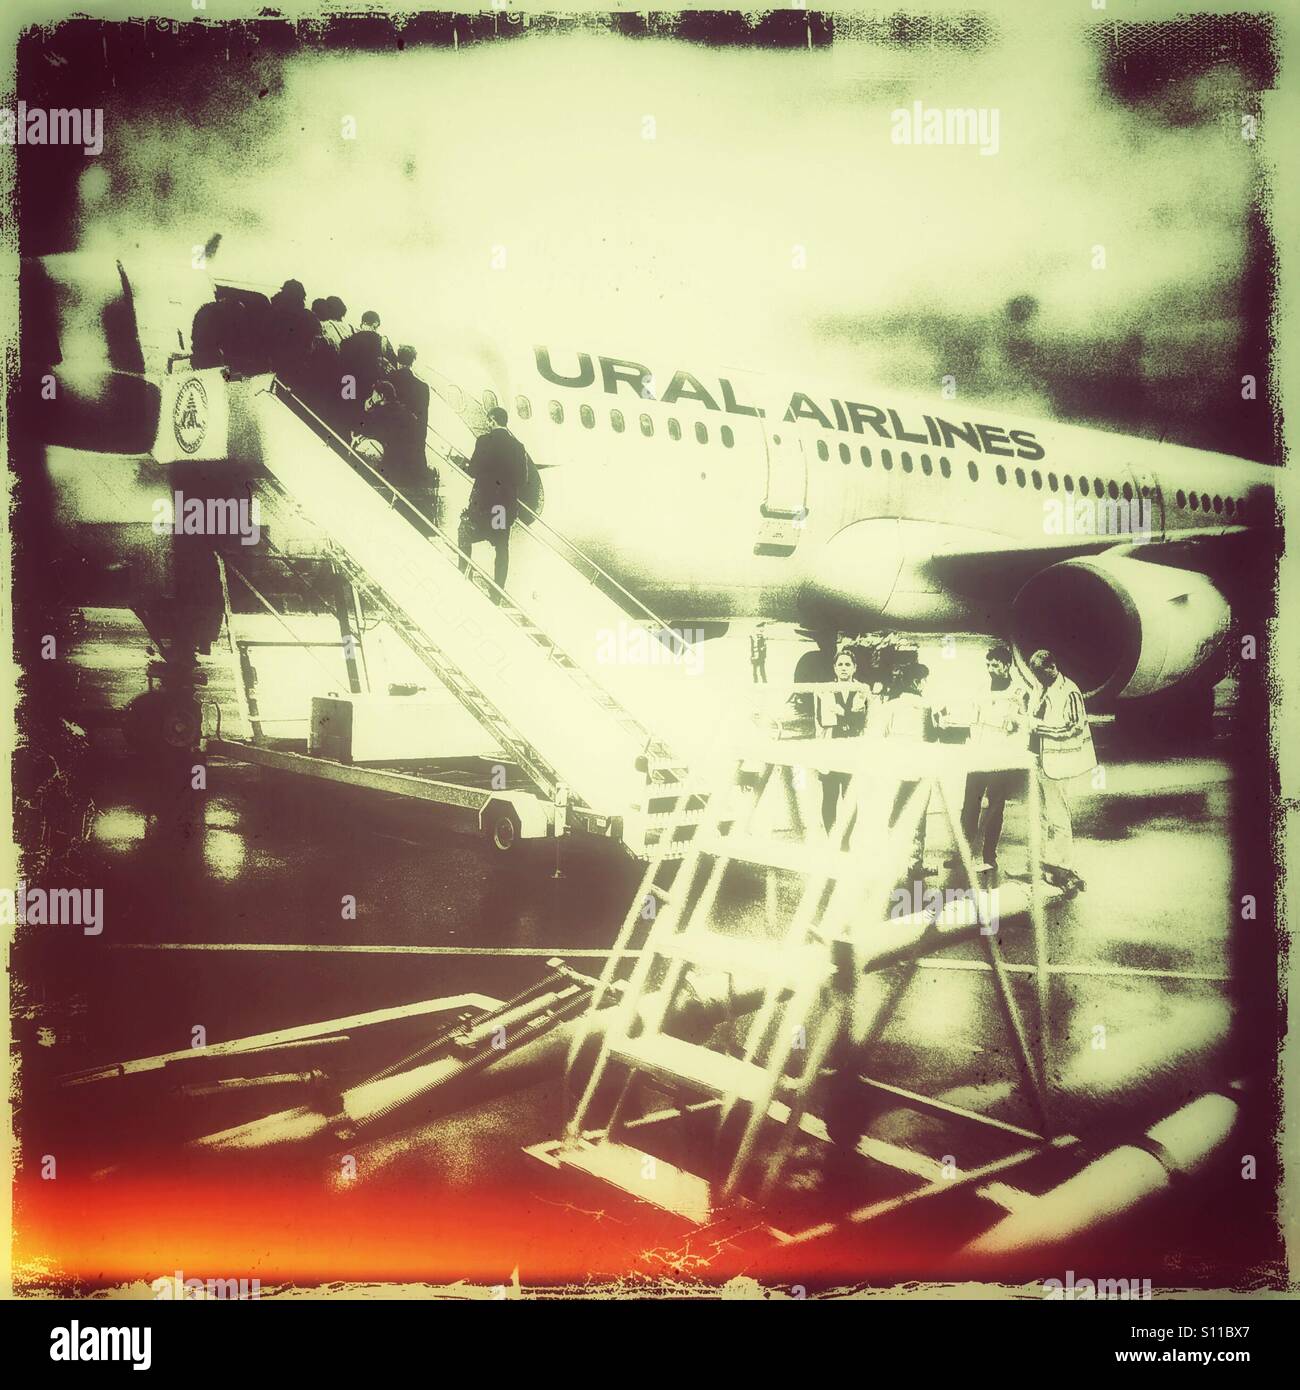 L'embarquement des voyageurs en avion, Ural Airlines, Simferopol Crimée Banque D'Images